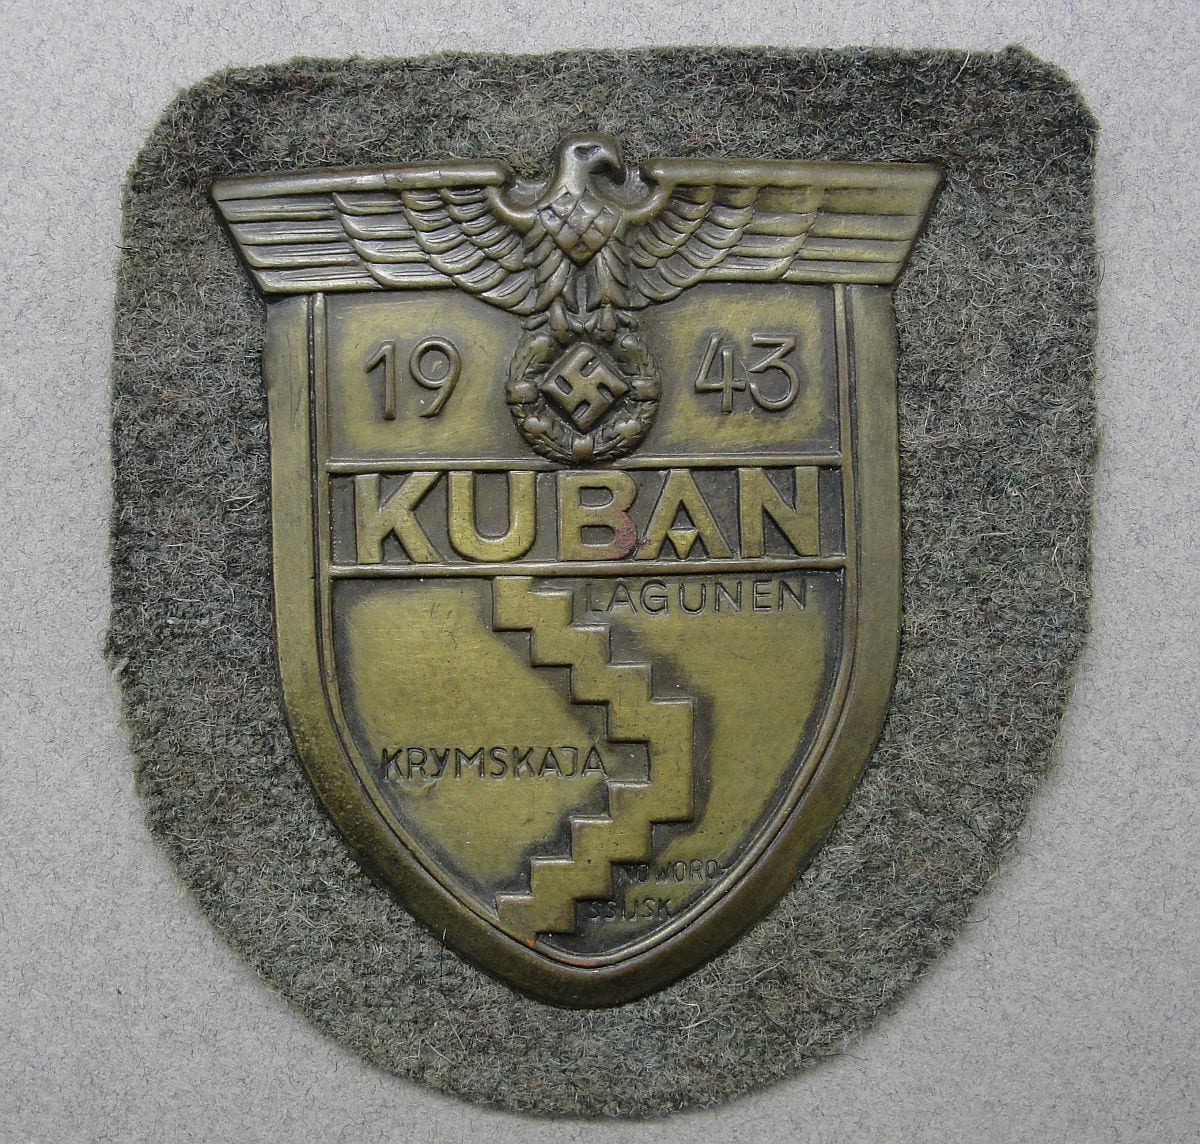 KUBAN Shield on Army/Waffen-SS Backing